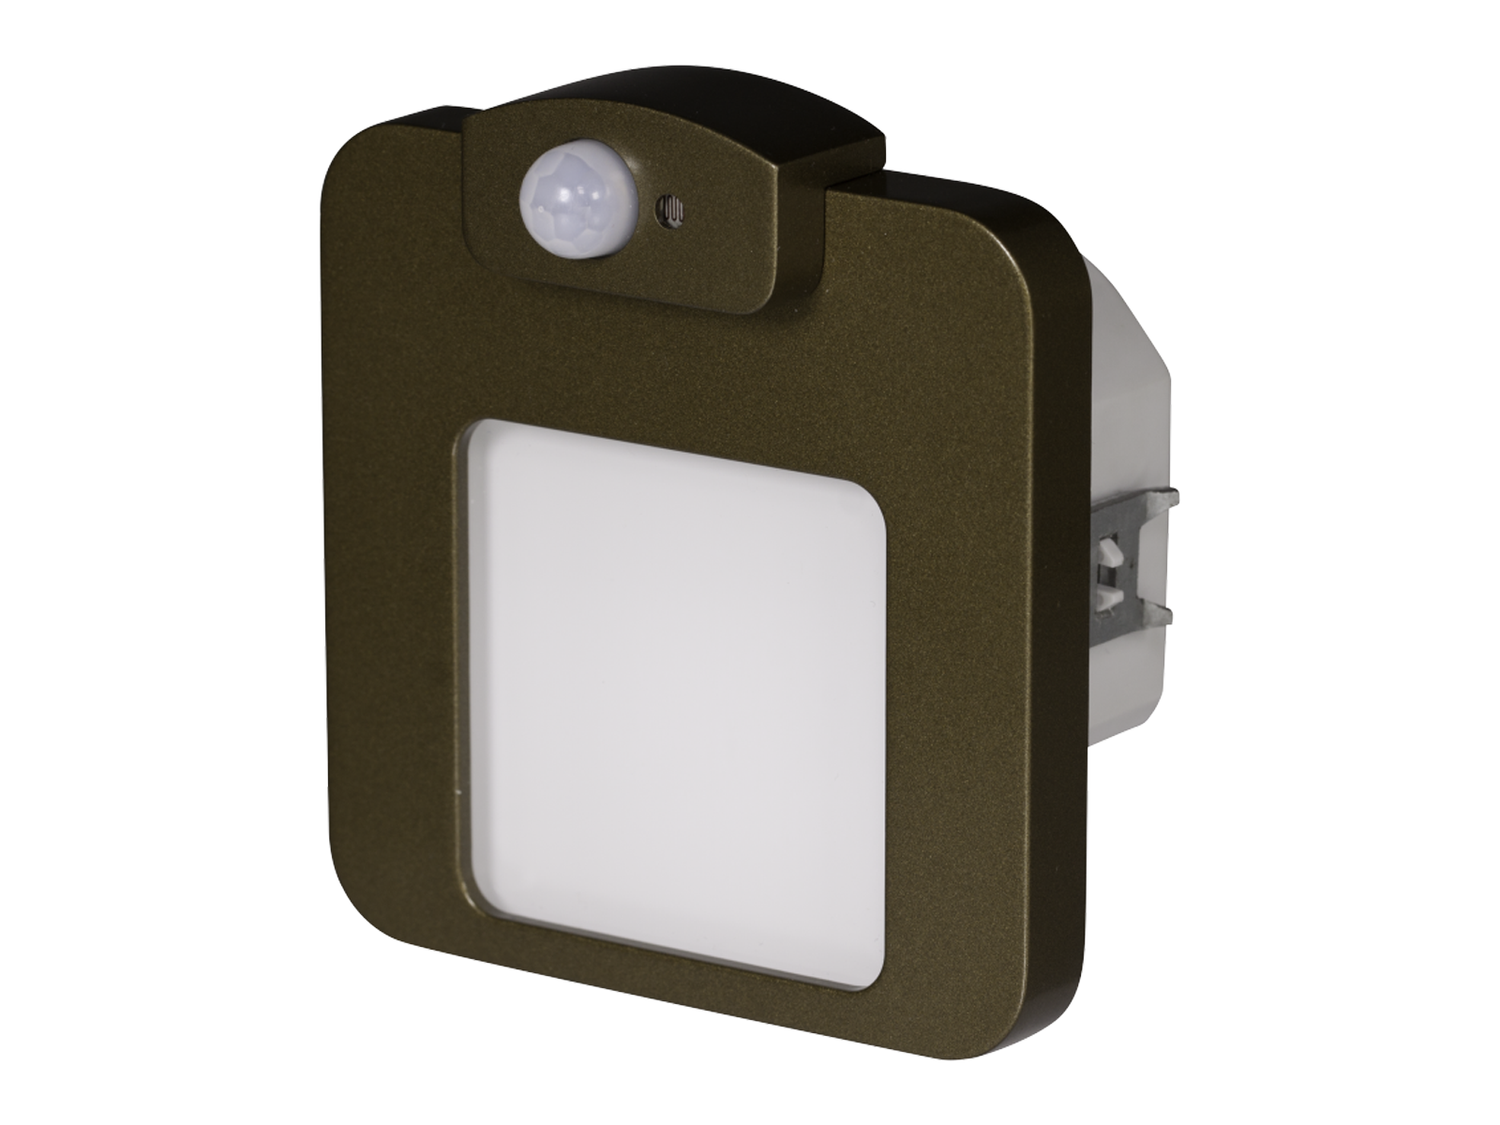 Svítidlo LED s čidlem do krabice LEDIX MOZA 230 V AC, zlatá patina, studená bílá, IP20